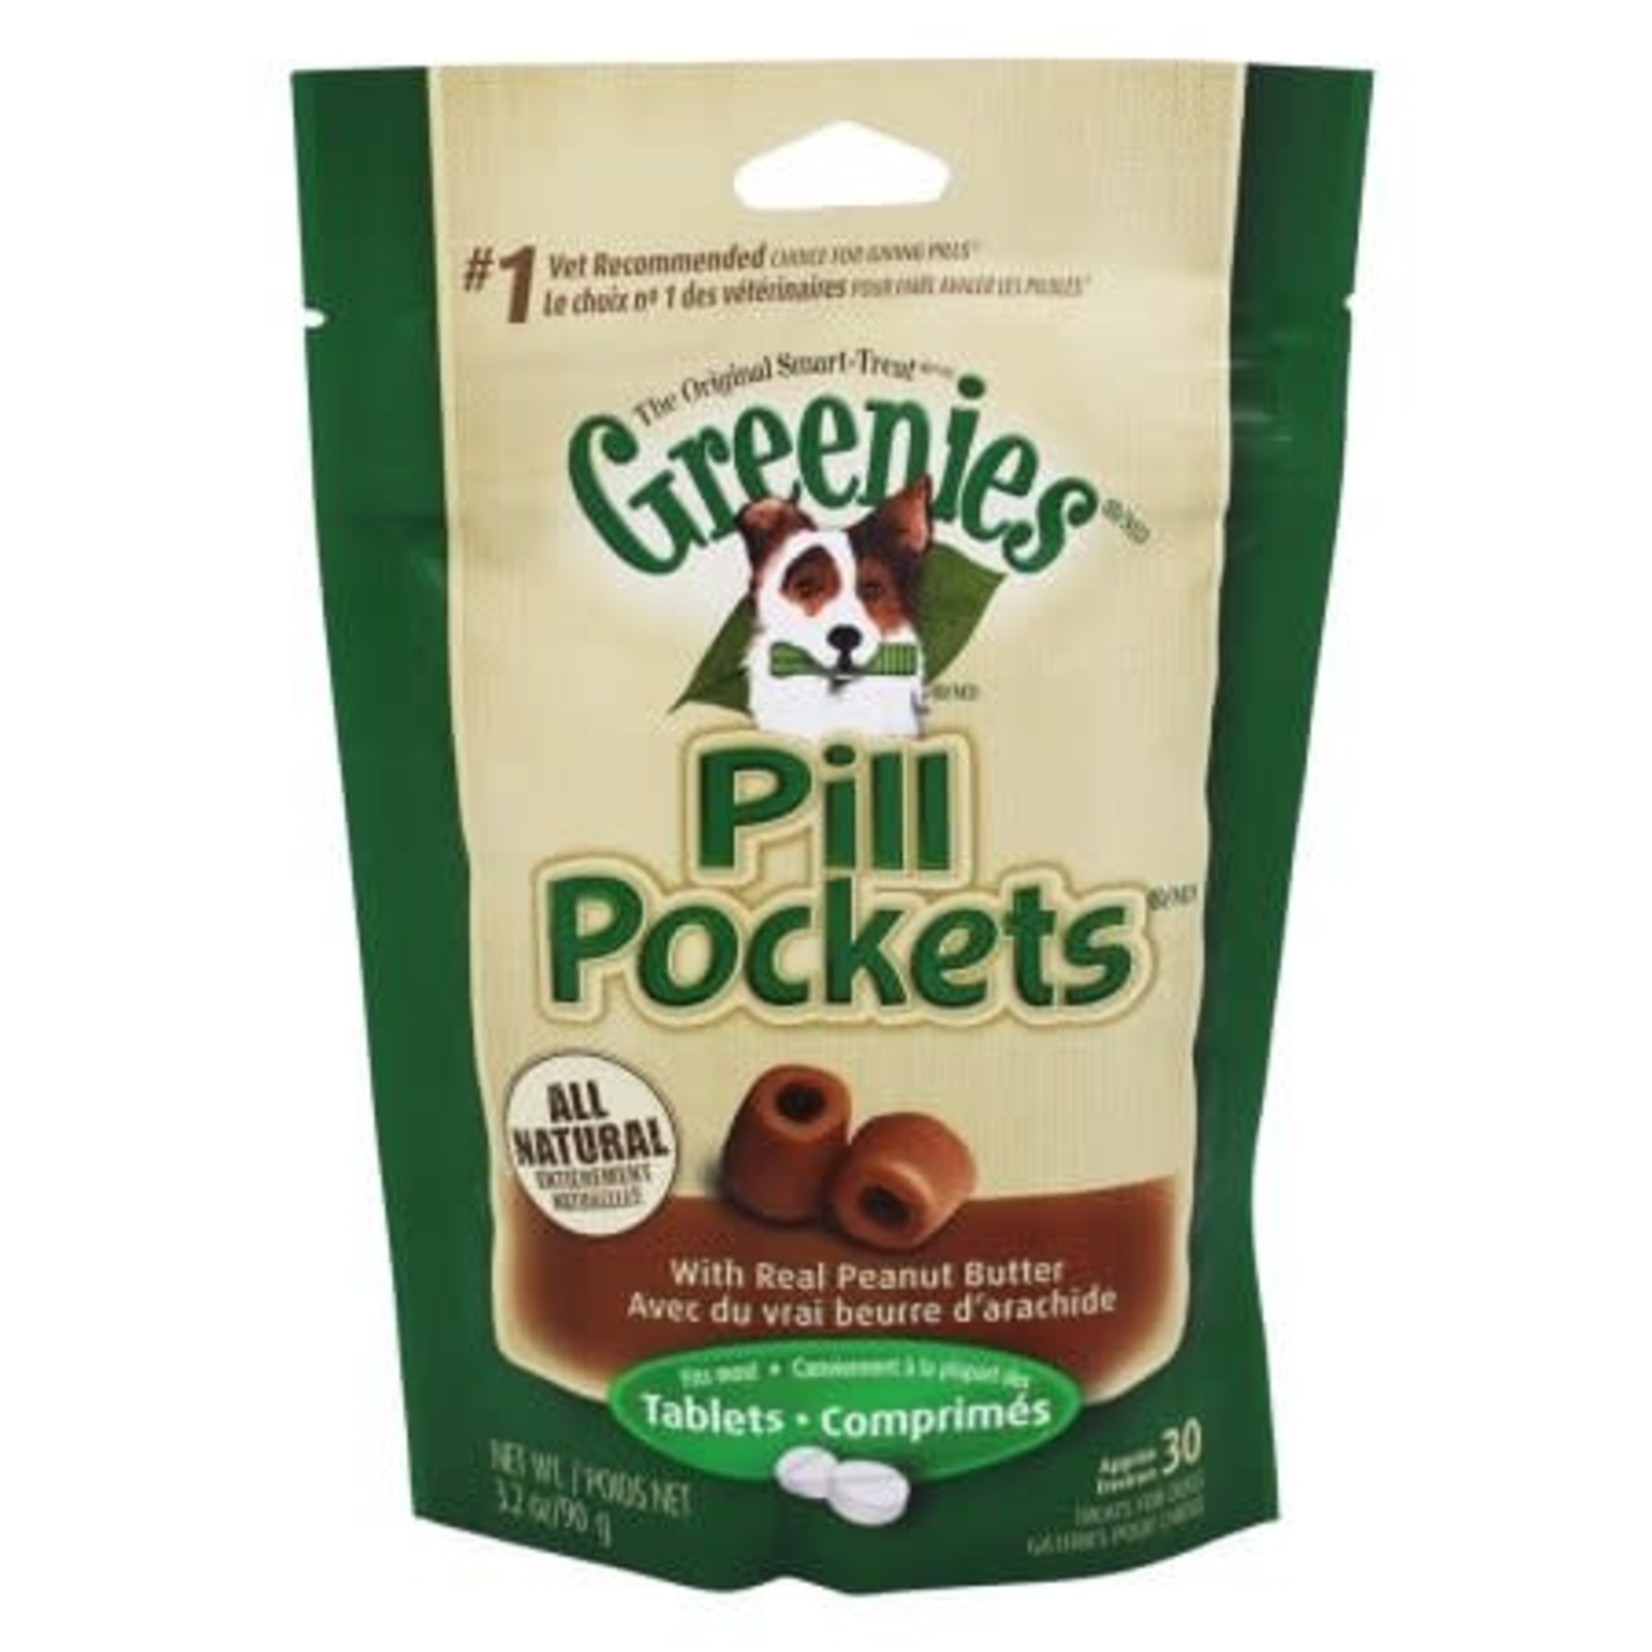 Greenies/Pill Pockets PILLPOCKET Tablet Peanut Butter Dog 3.2oz